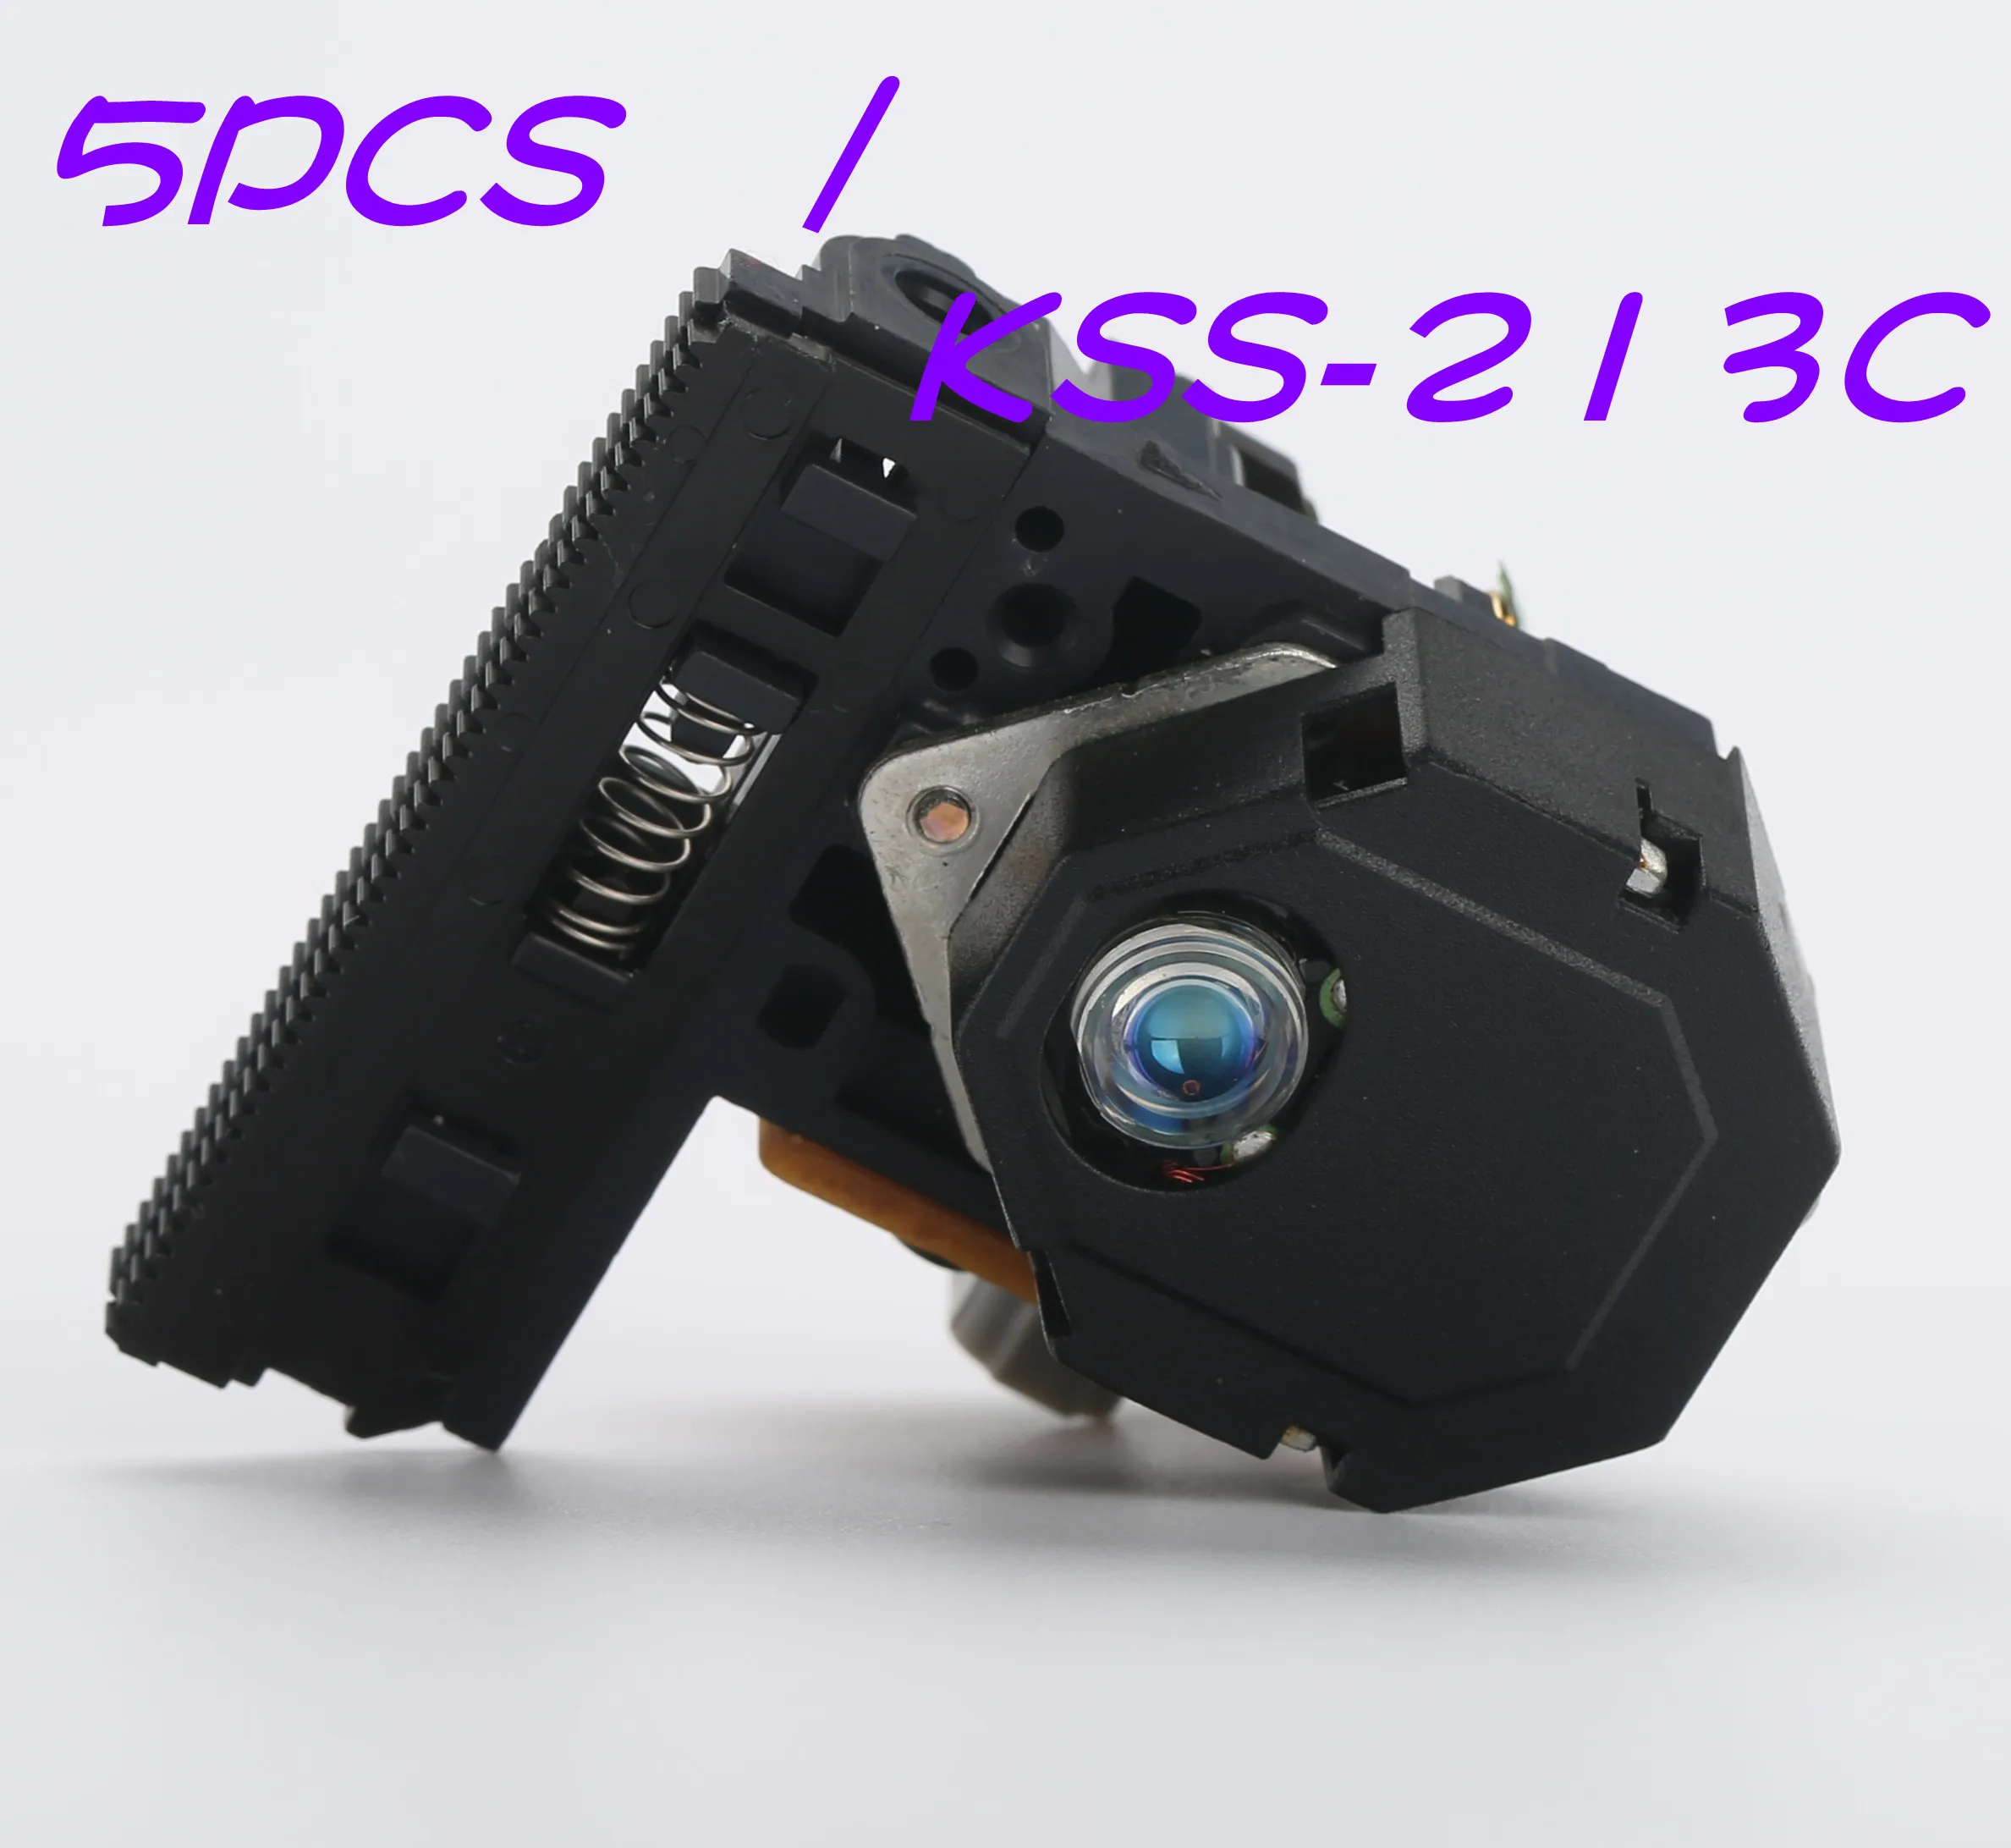 

5PCS KSS-213C KSS213C KSS-213CL KSS-213 Blue lens Radio CD Player Laser Lens Optical Pick-ups Bloc Optique